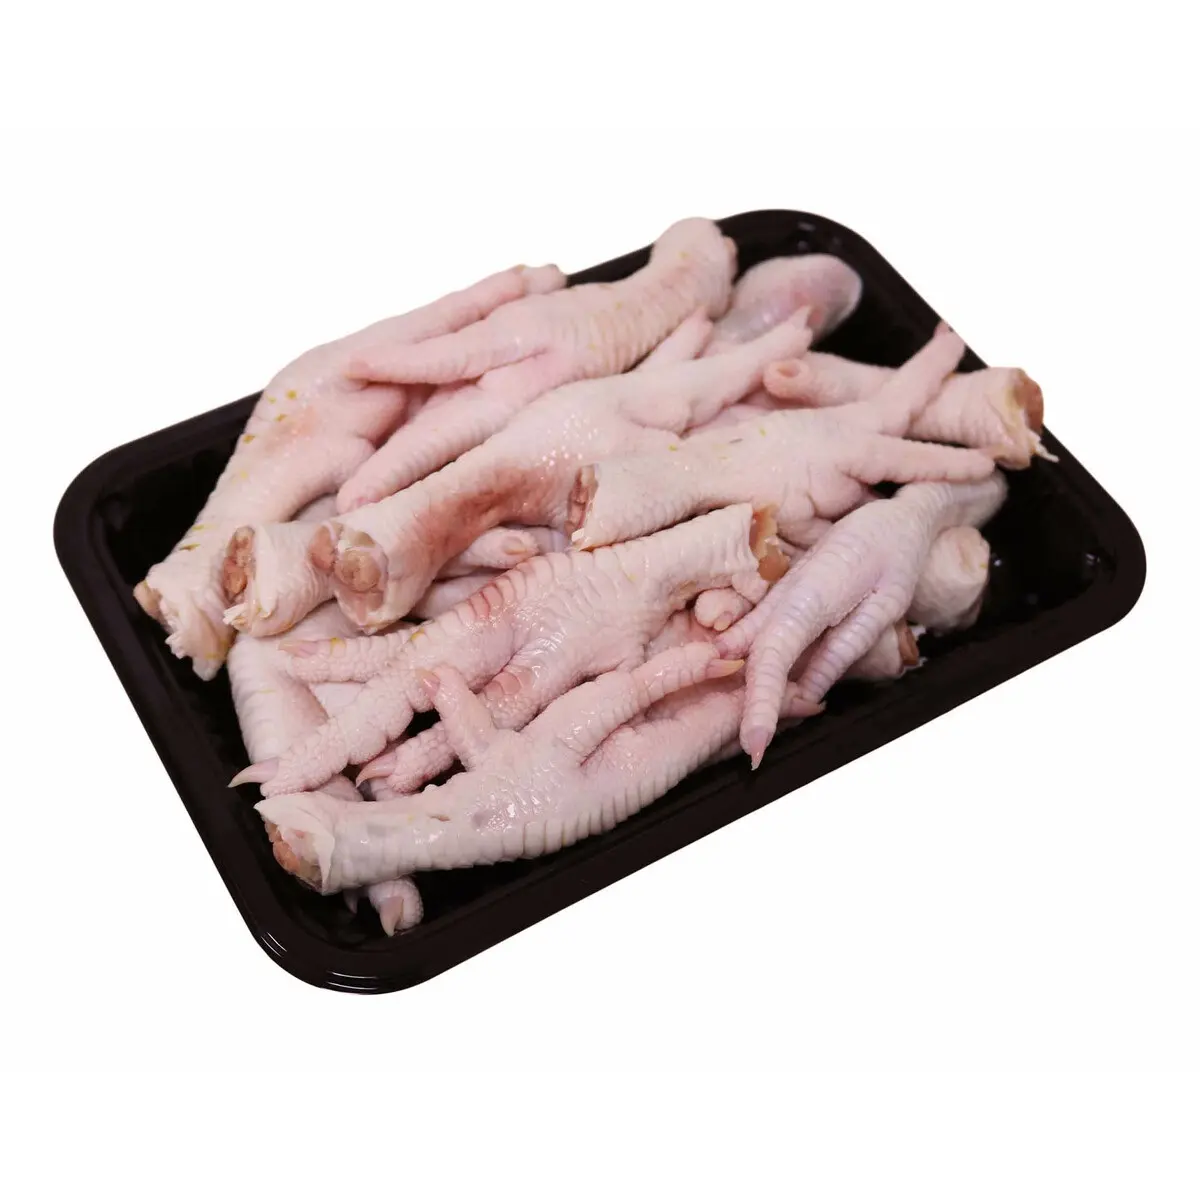 Halal Frozen Chicken Feet/Chicken Paws Bestseller Premium Halal Frozen Whole Chicken Feet Paws